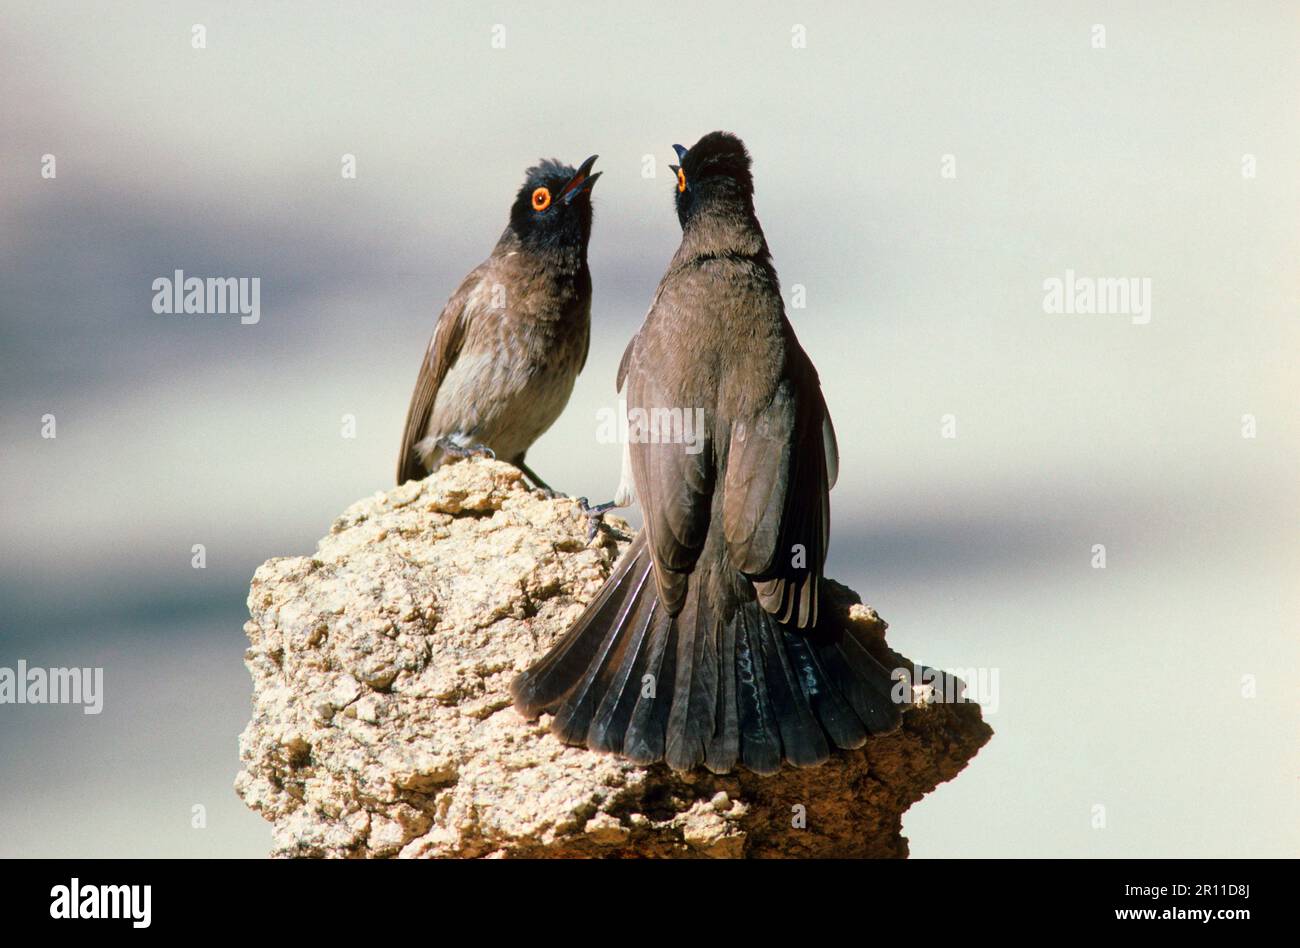 Bulbul africain à yeux rouges (Pycnonotus nigricans) deux sur les roches, poses agressives et soumises Banque D'Images